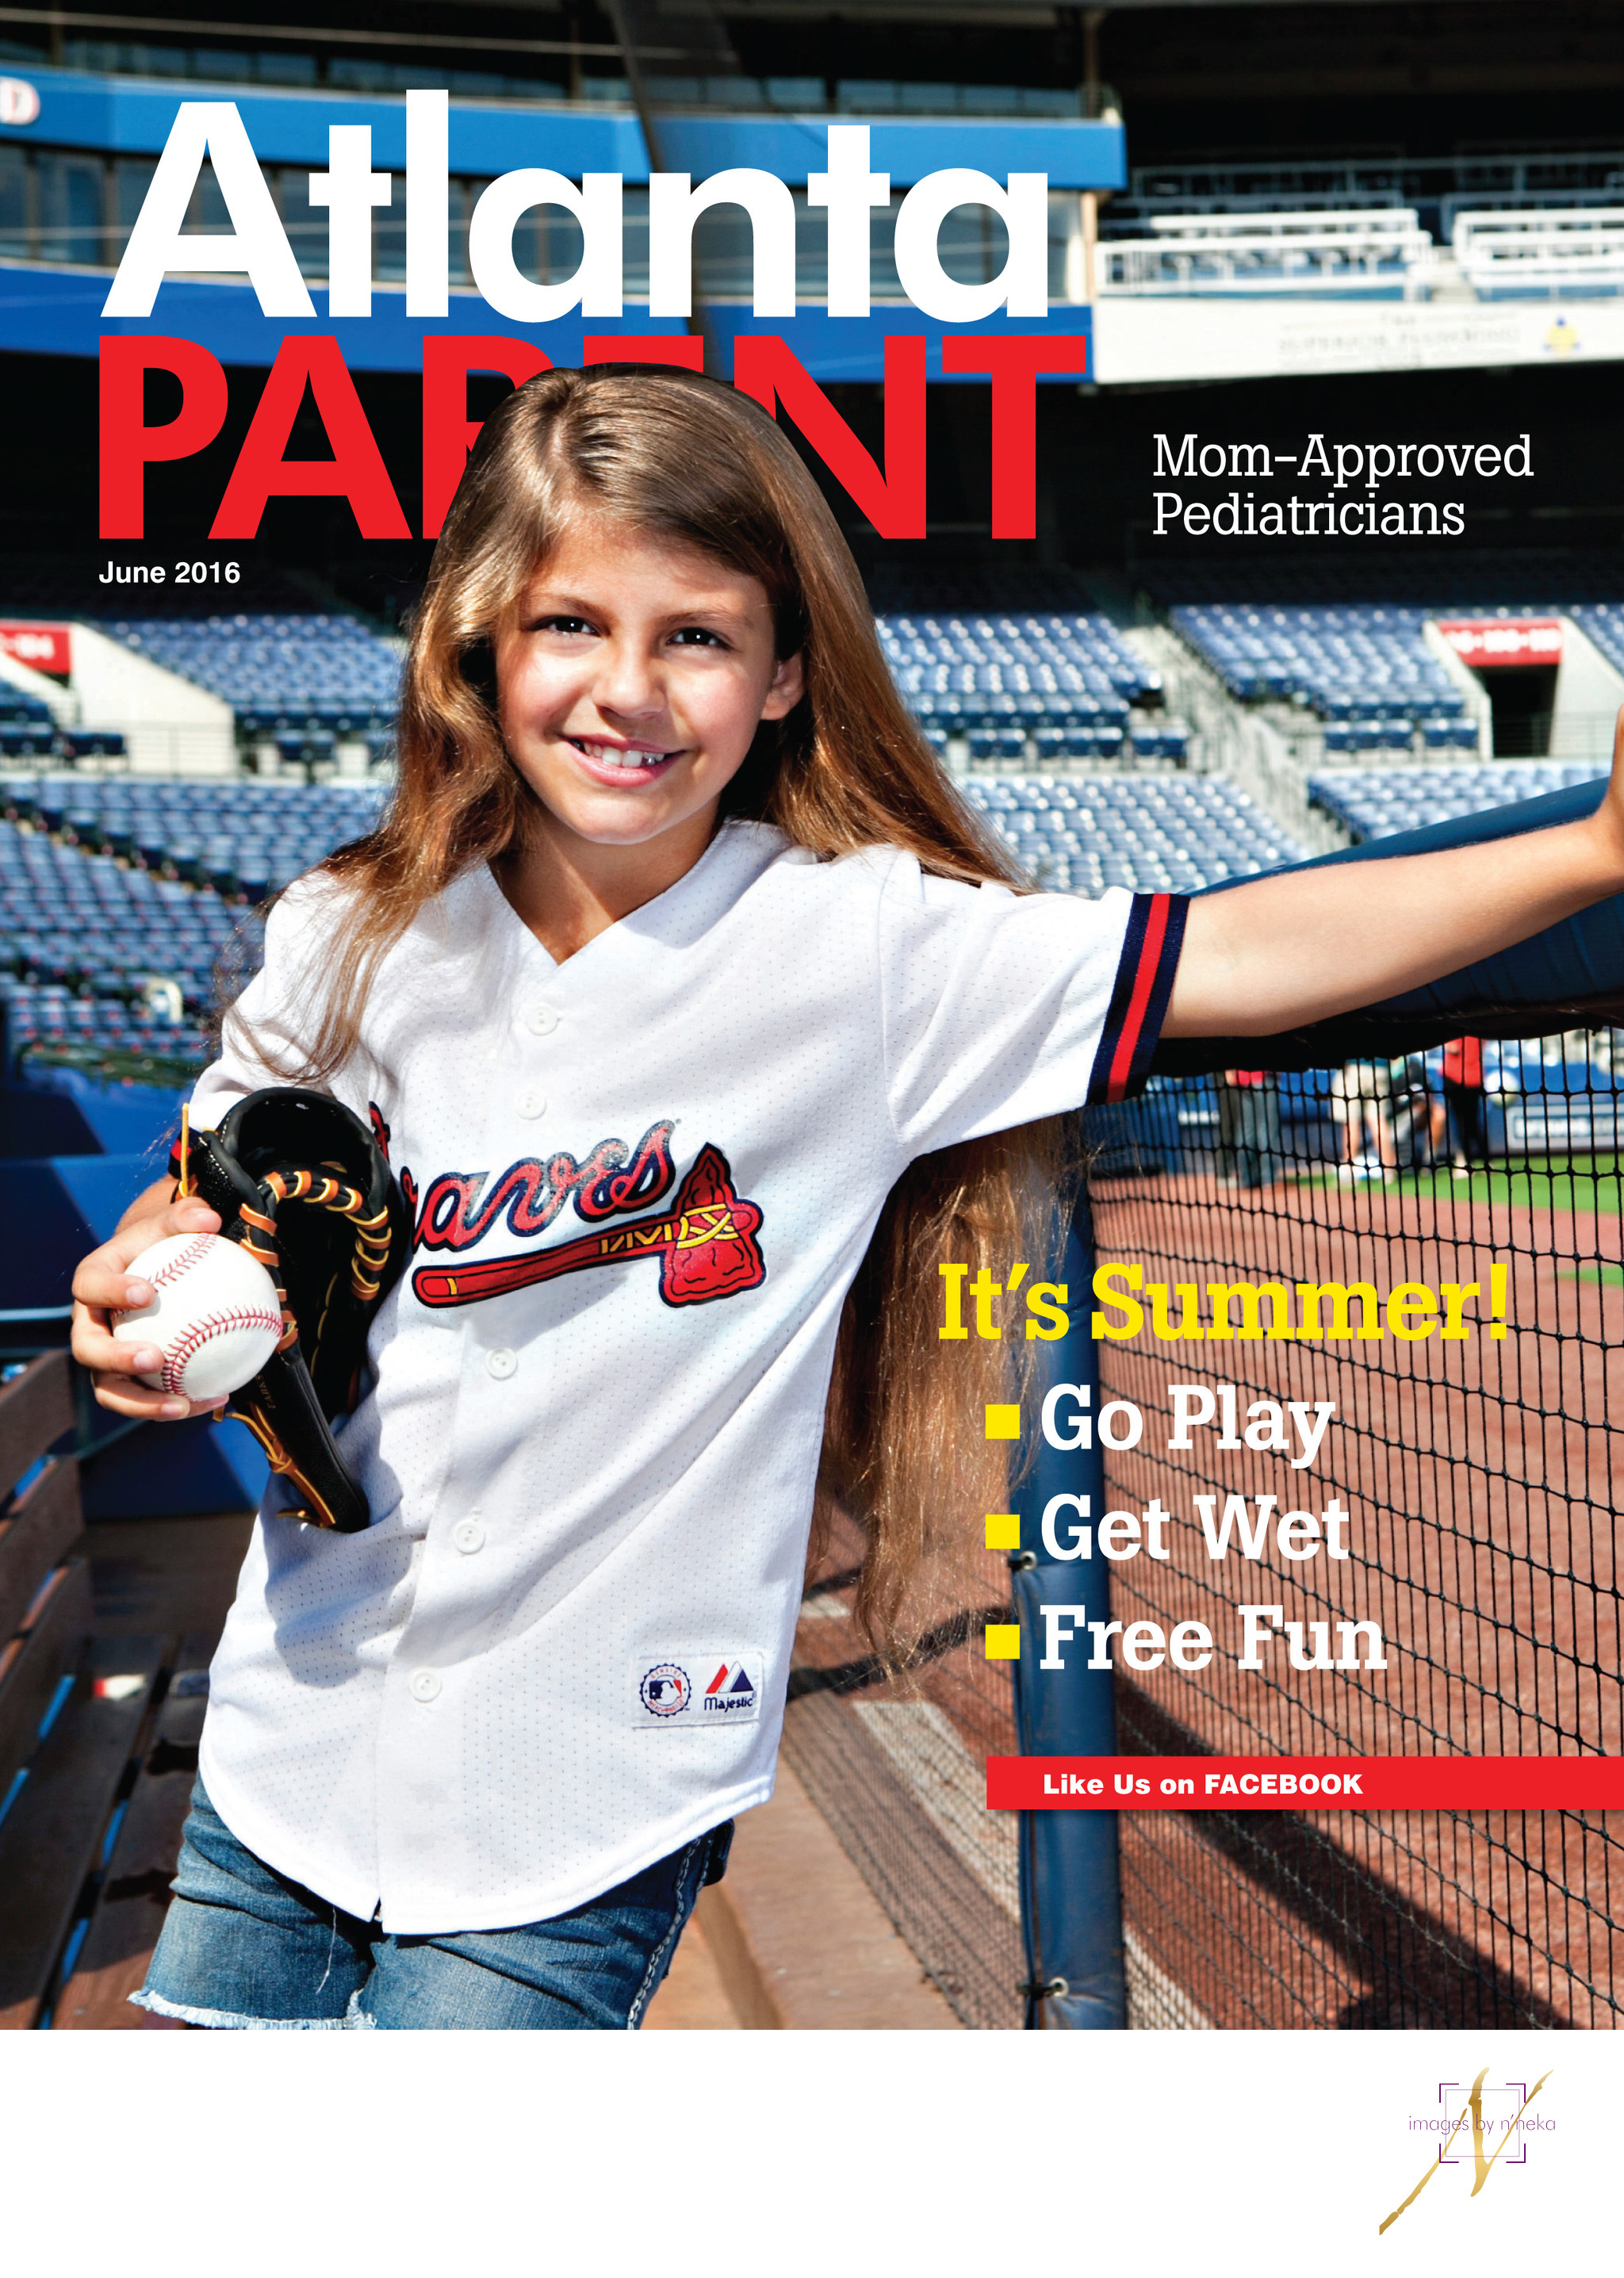 Atlanta Parent Cover June 2016 Press Images by N'neka